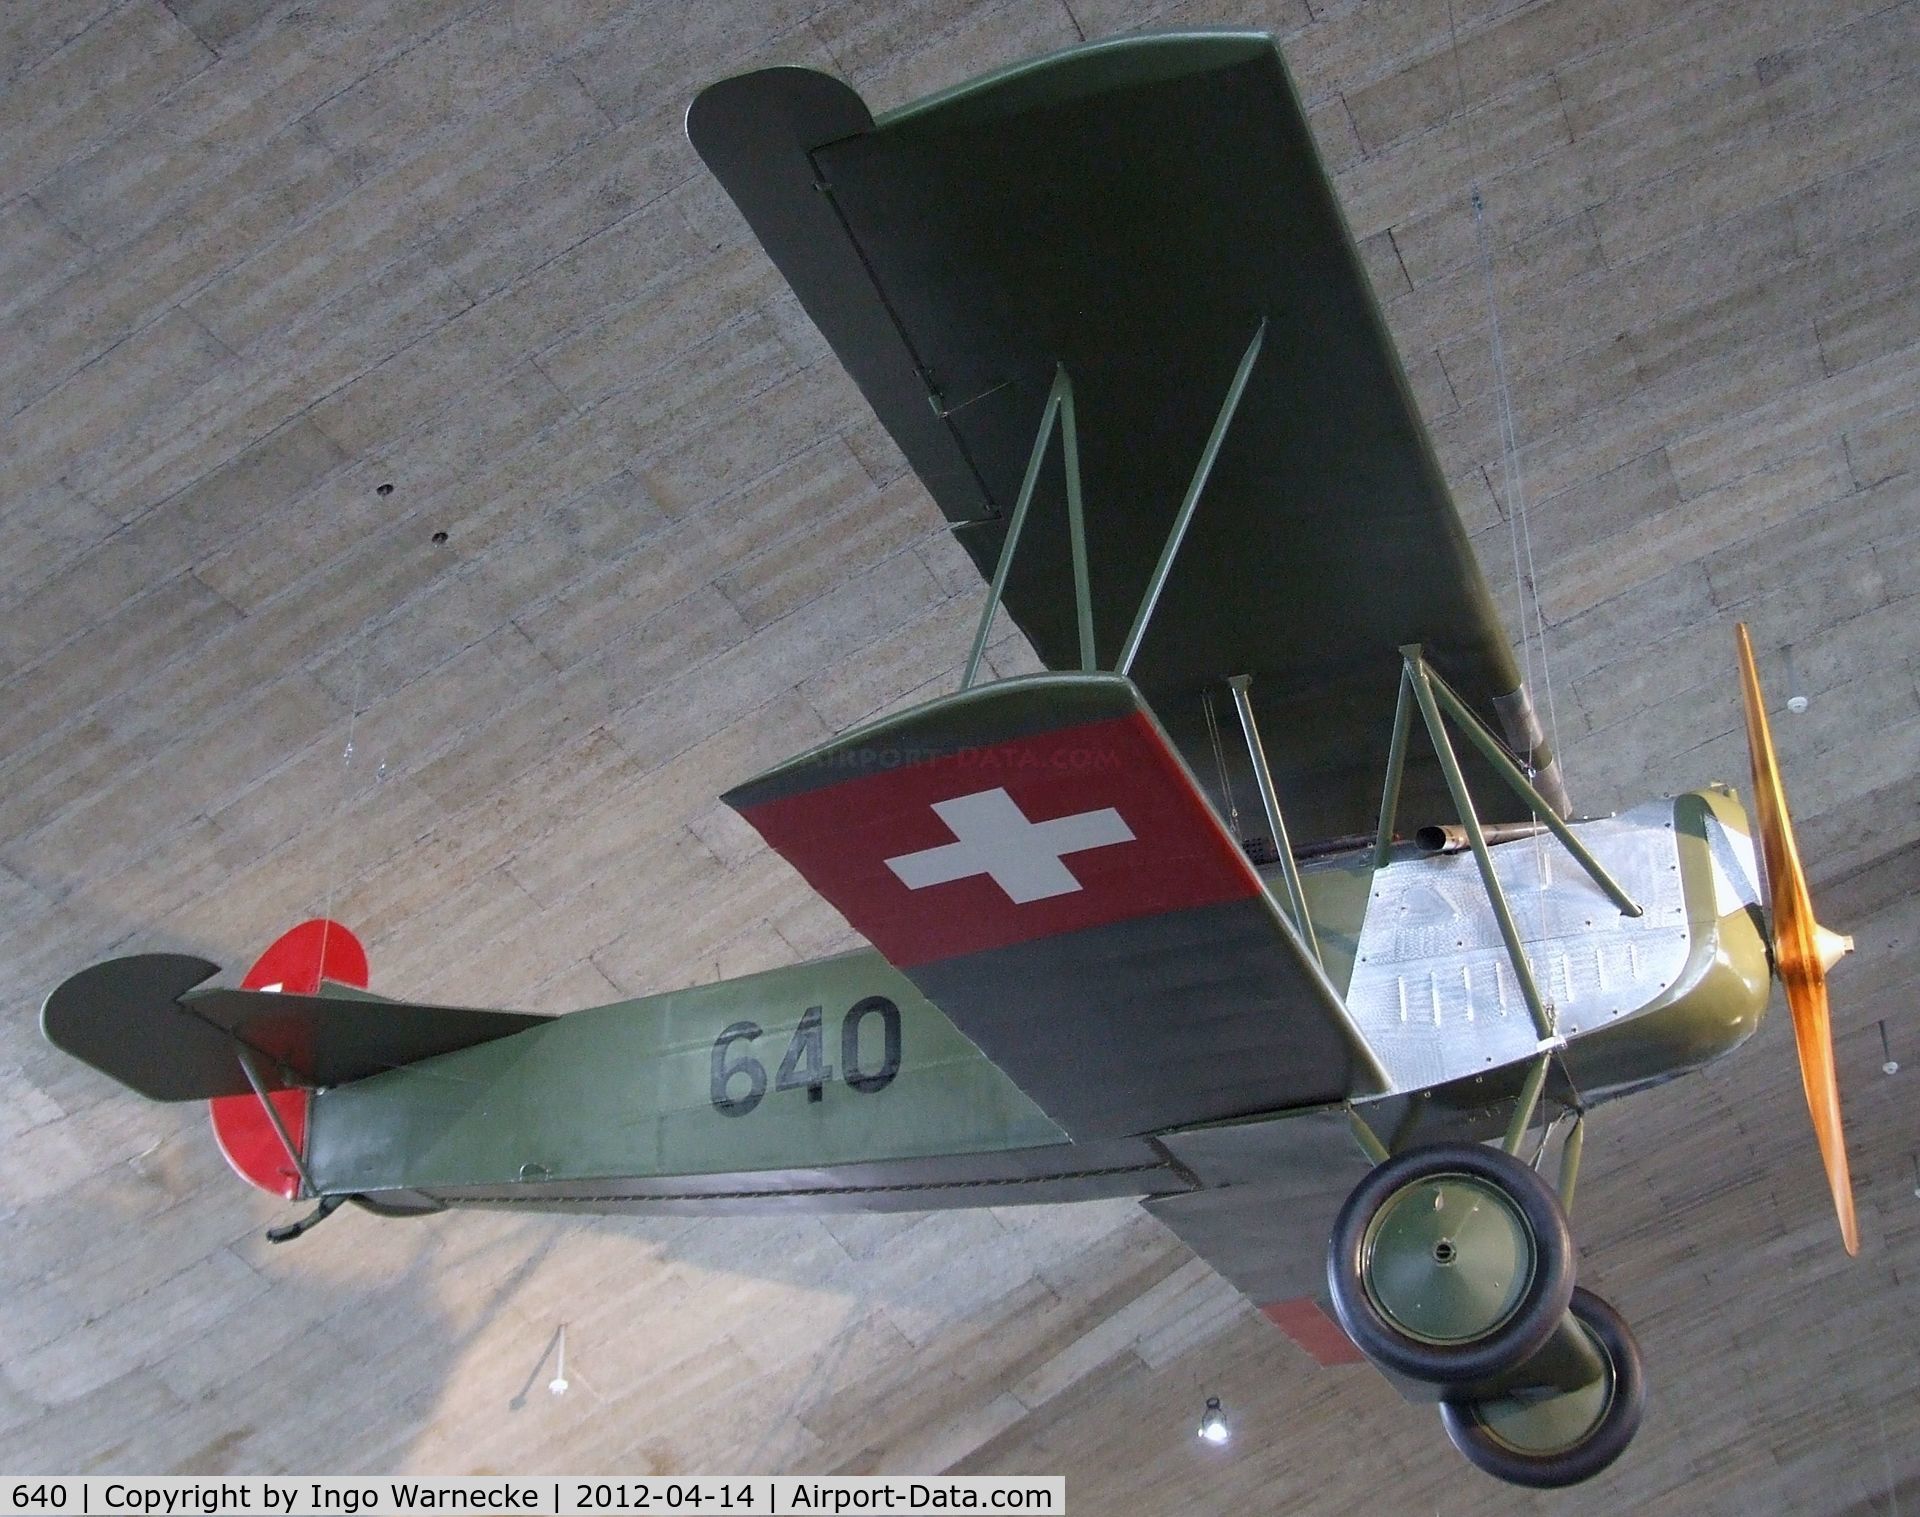 640, 1917 Fokker D-VII C/N Not found 640, Fokker D VII at the Flieger-Flab-Museum, Dübendorf